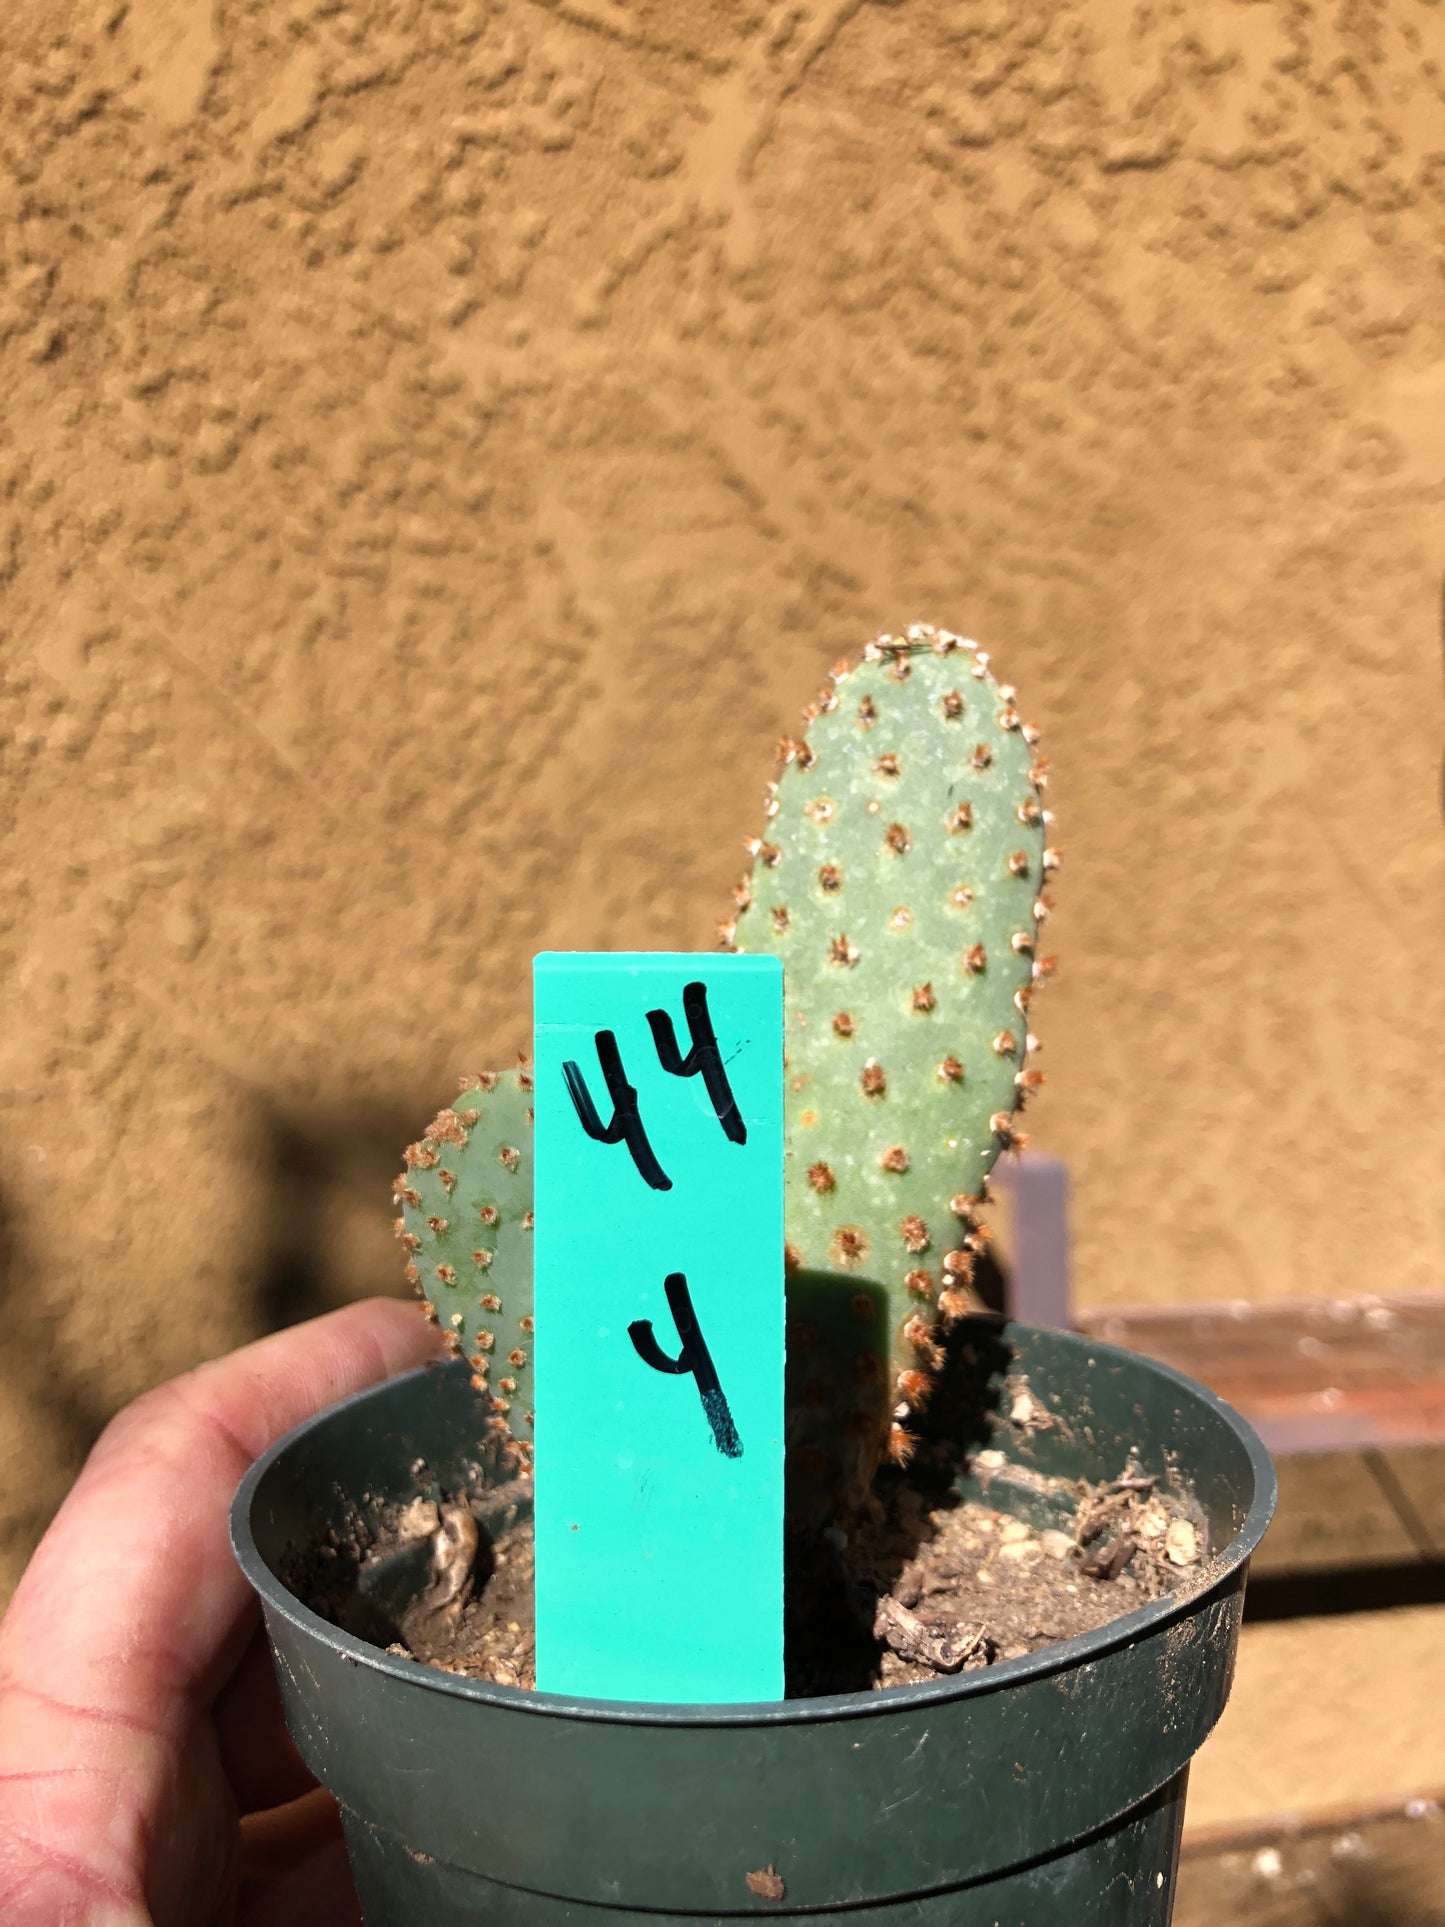 Opuntia Basilaris Beavertail Cactus 4"Tall #44G